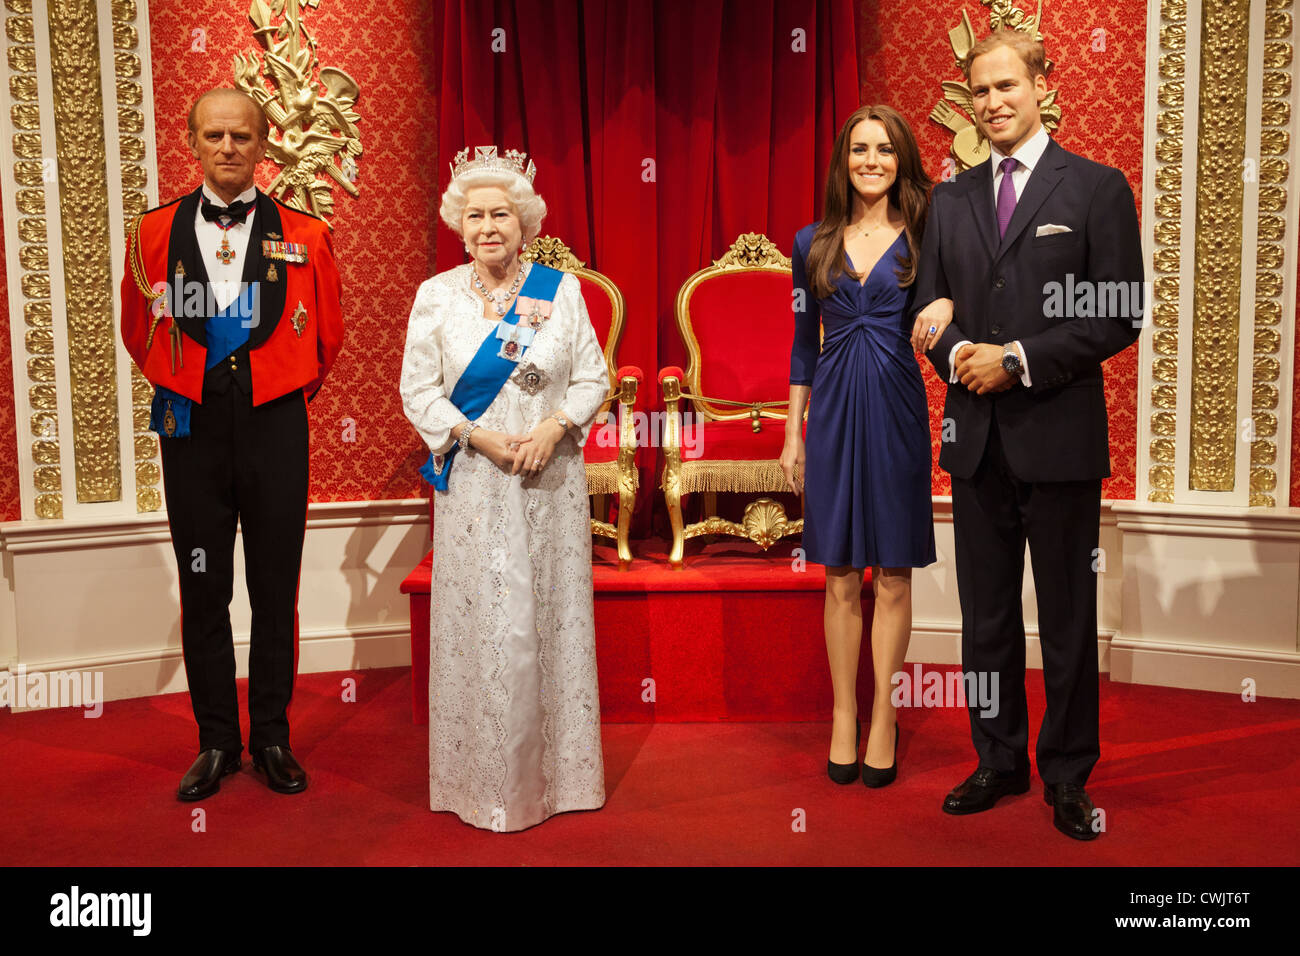 L'Angleterre, Londres, de cire Madame Tussauds, l'affichage des membres de la famille royale britannique Banque D'Images